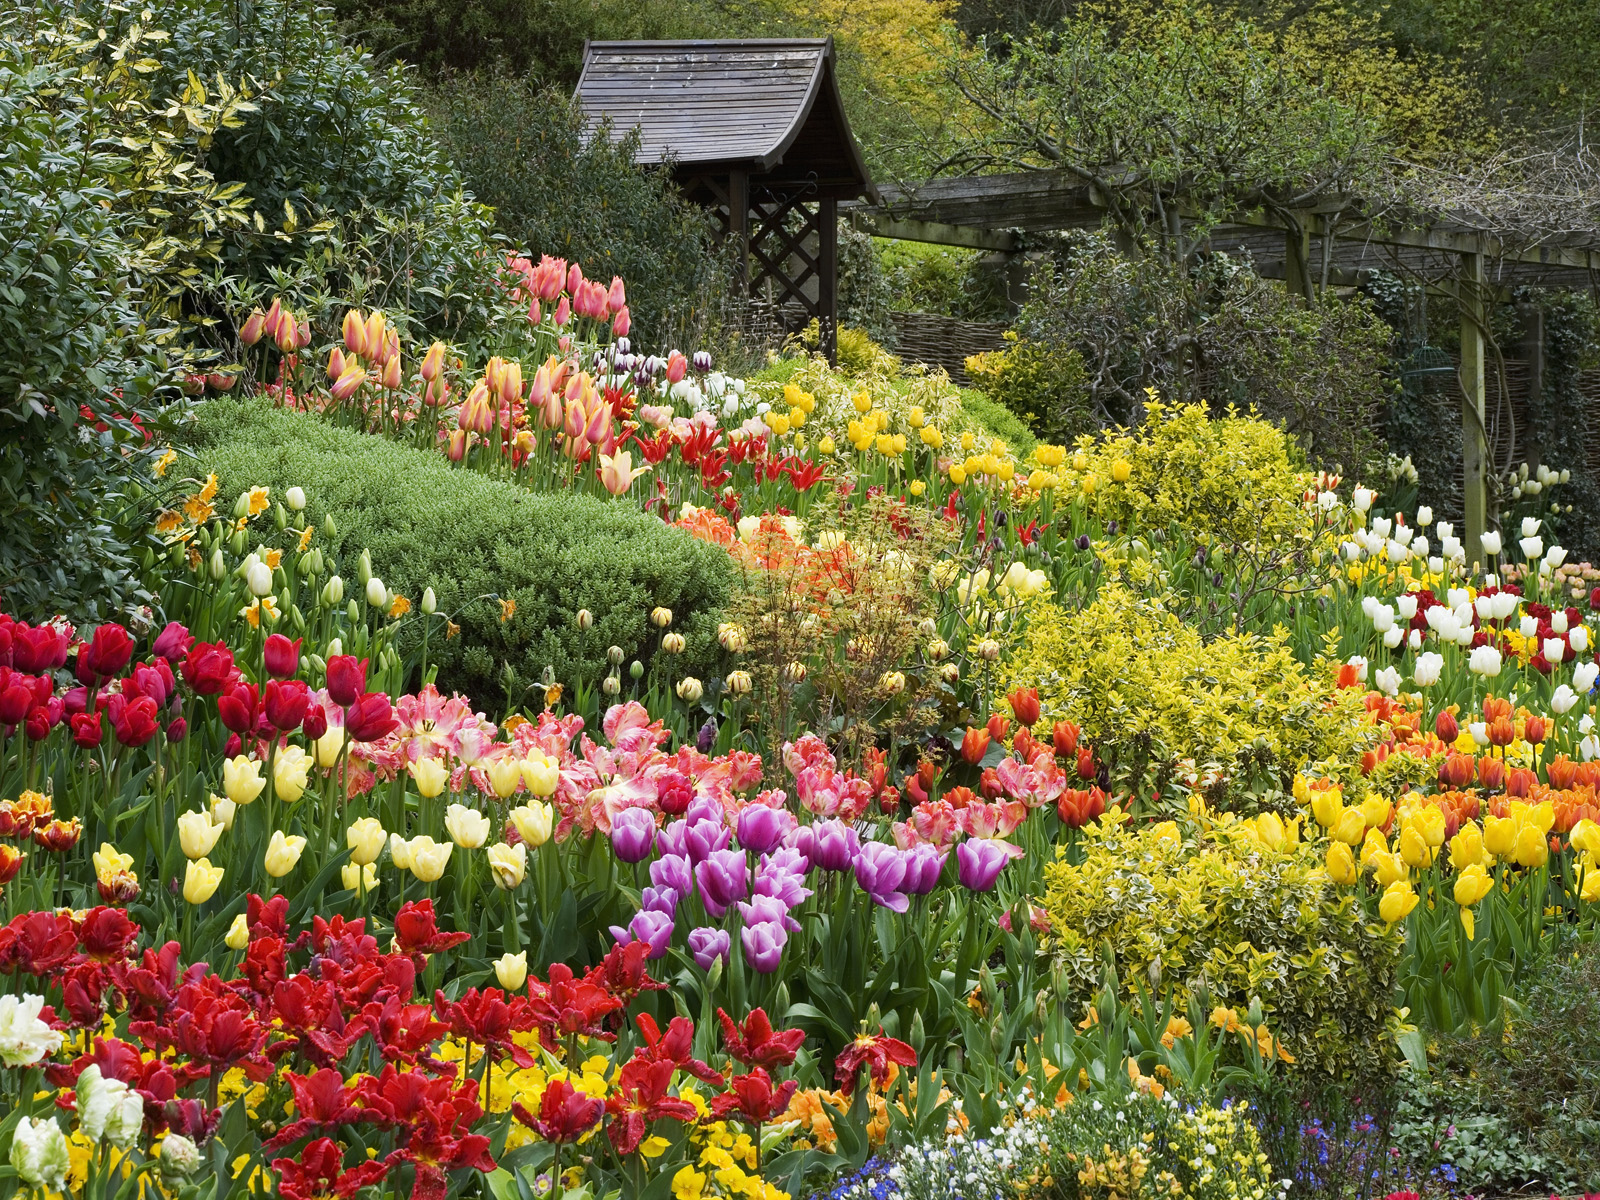 Hãy ngắm nhìn vườn hoa đẹp của chúng tôi, một nơi náo nhiệt với màu sắc và hương thơm của hoa. Những thứ này sẽ khiến bạn cảm thấy tươi vui và thư giãn, và tạo ra những trải nghiệm kỳ diệu đầy màu sắc cho bạn.